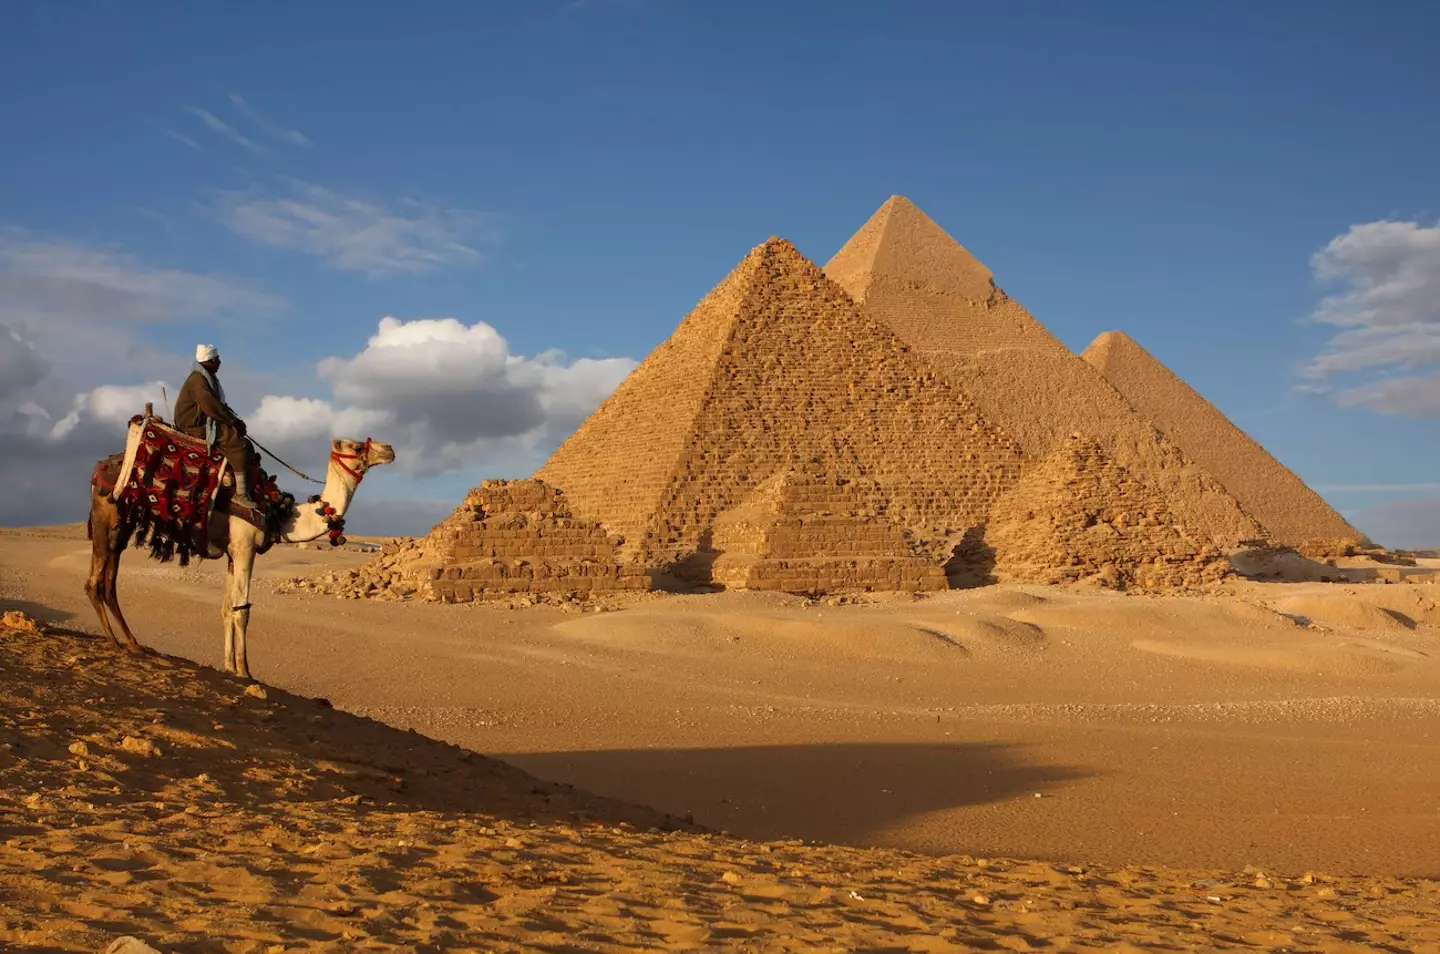 Pyramids at Giza.